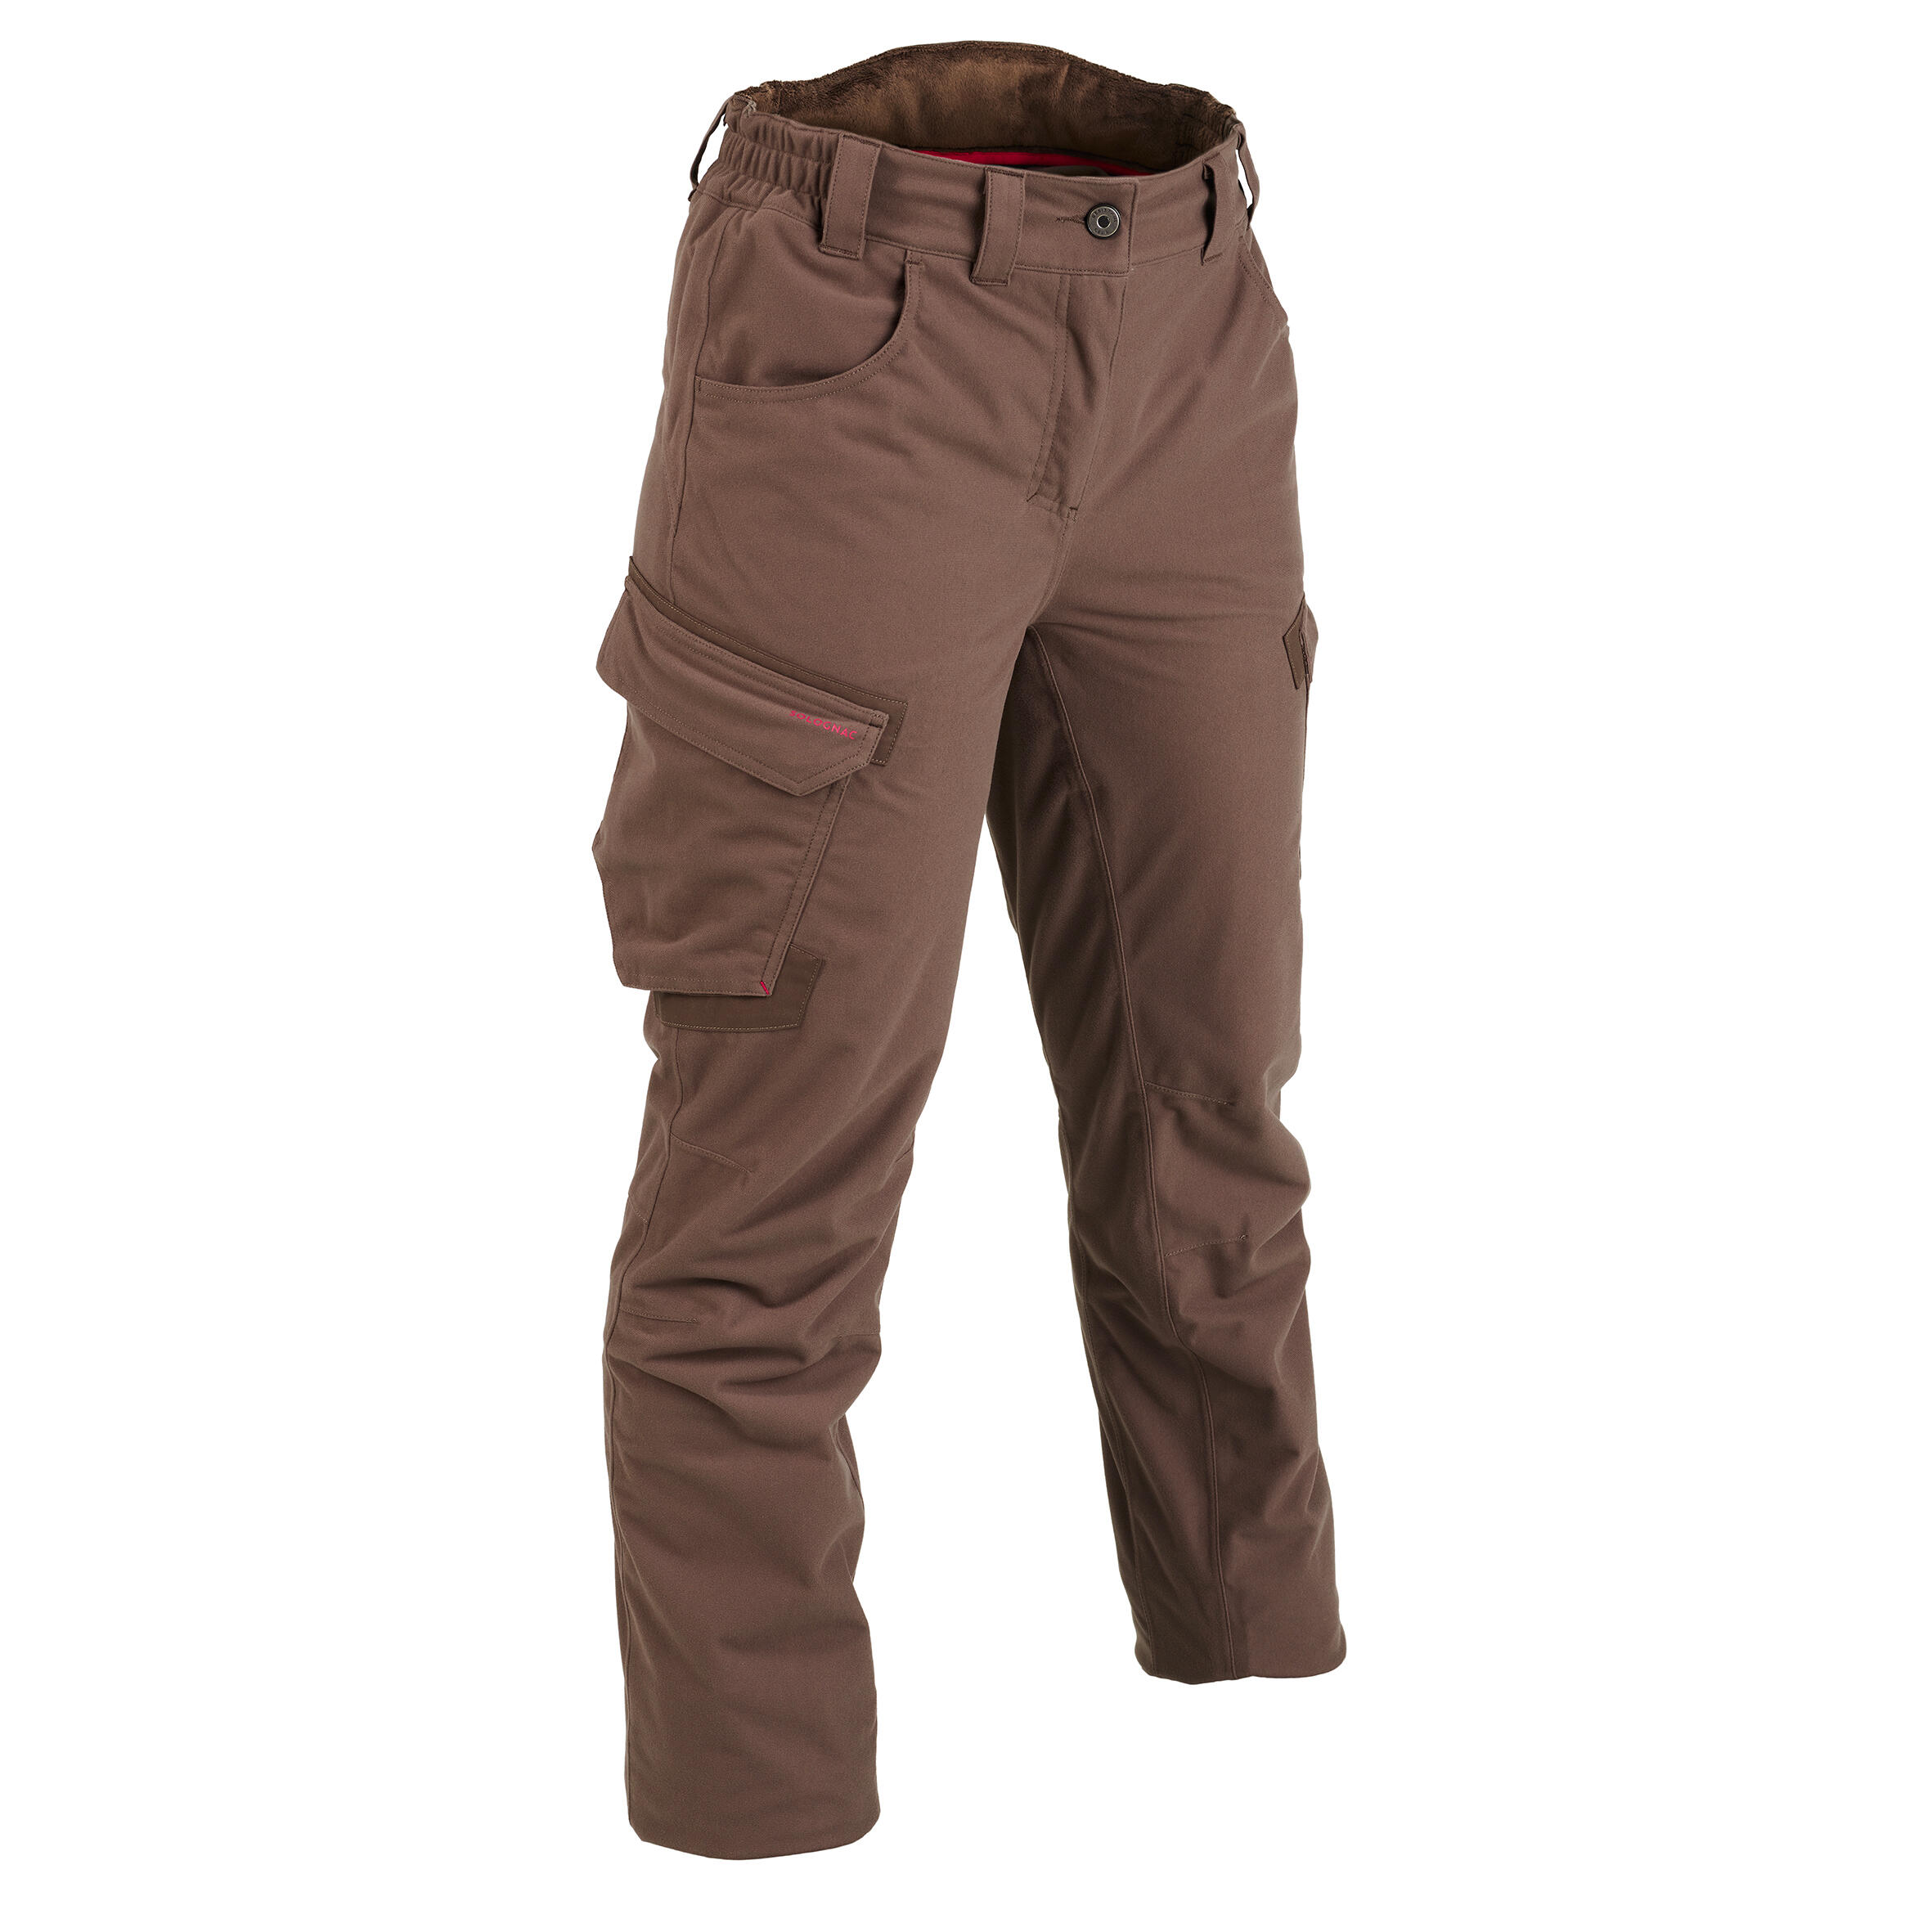 Pantalon 500 Impermeabil Călduros Maro Damă La Oferta Online decathlon imagine La Oferta Online